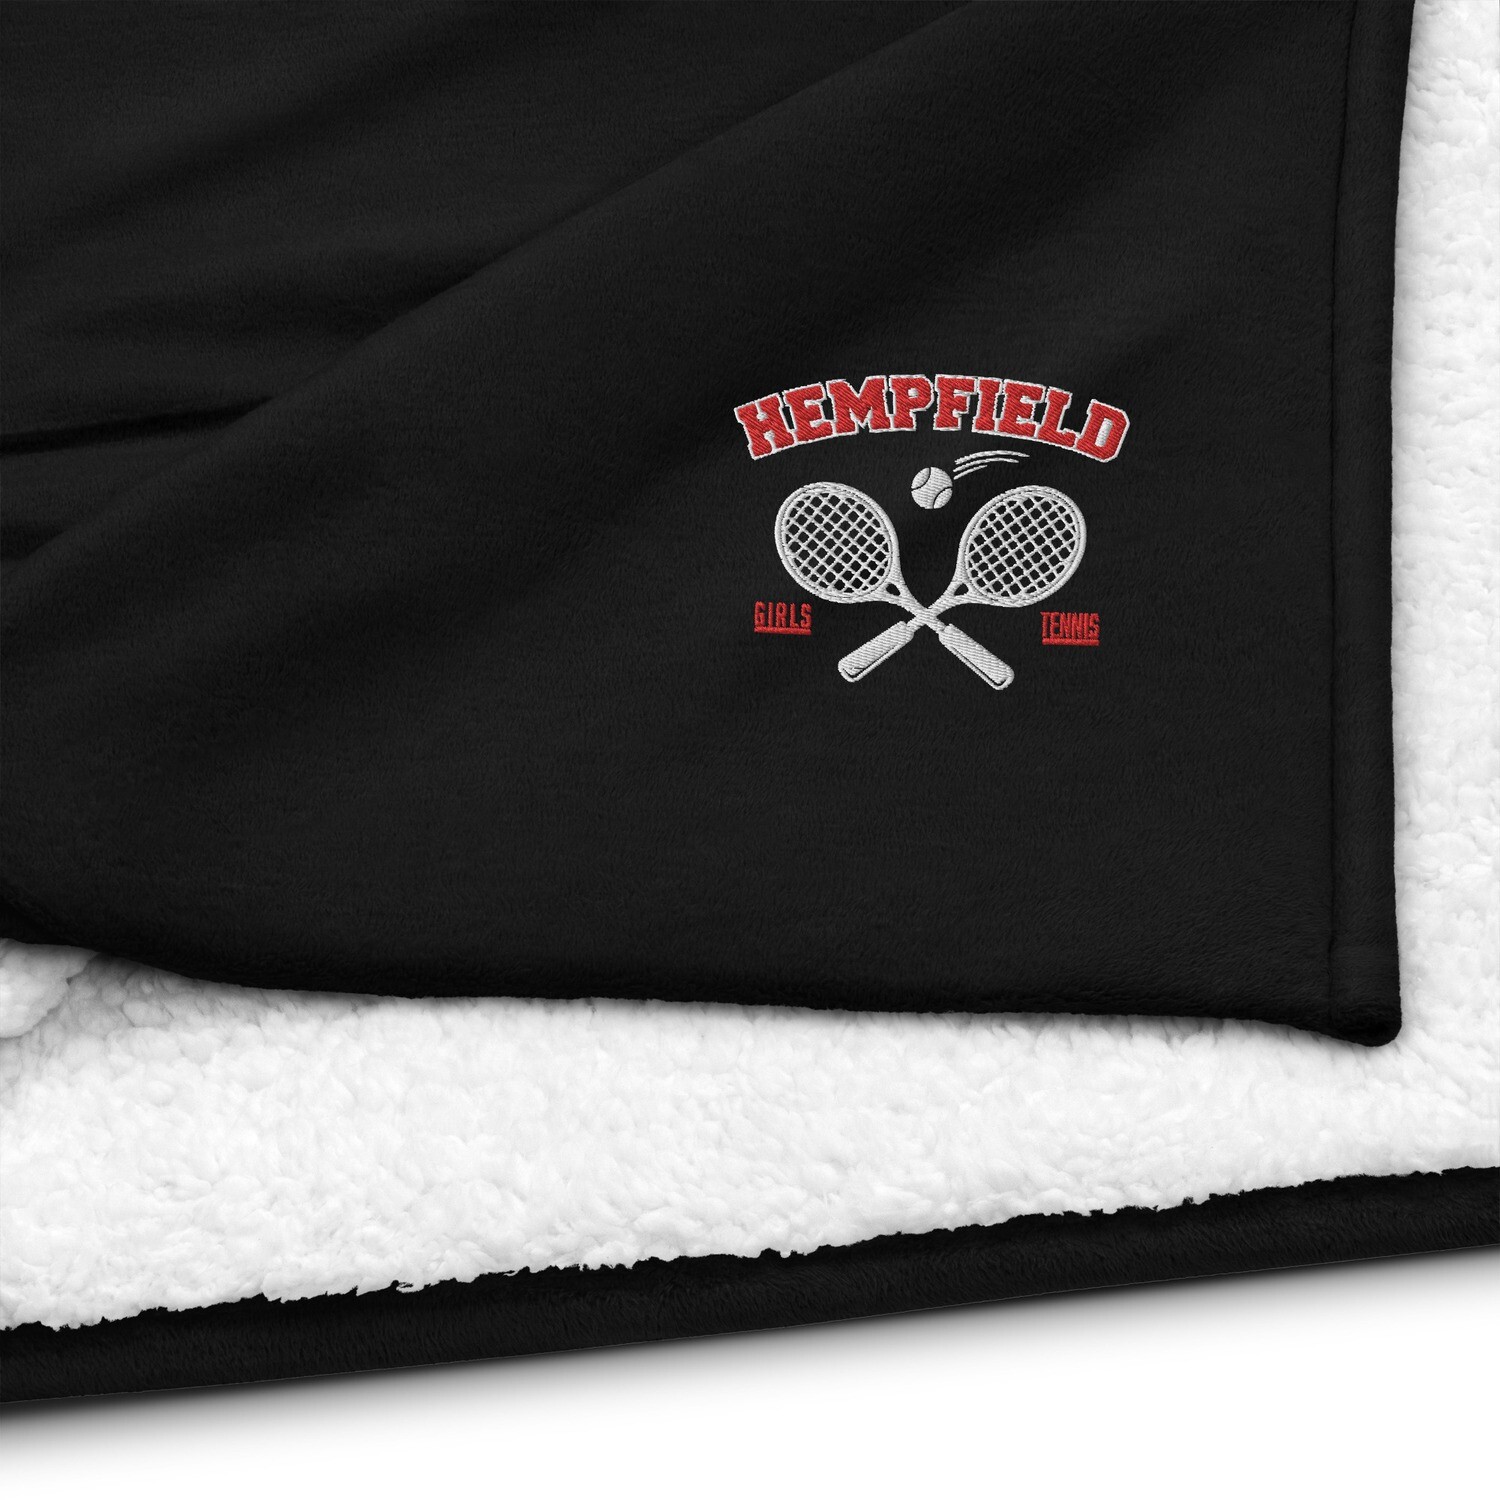 Hempfield Girls Tennis Embroidered Premium Sherpa Blanket